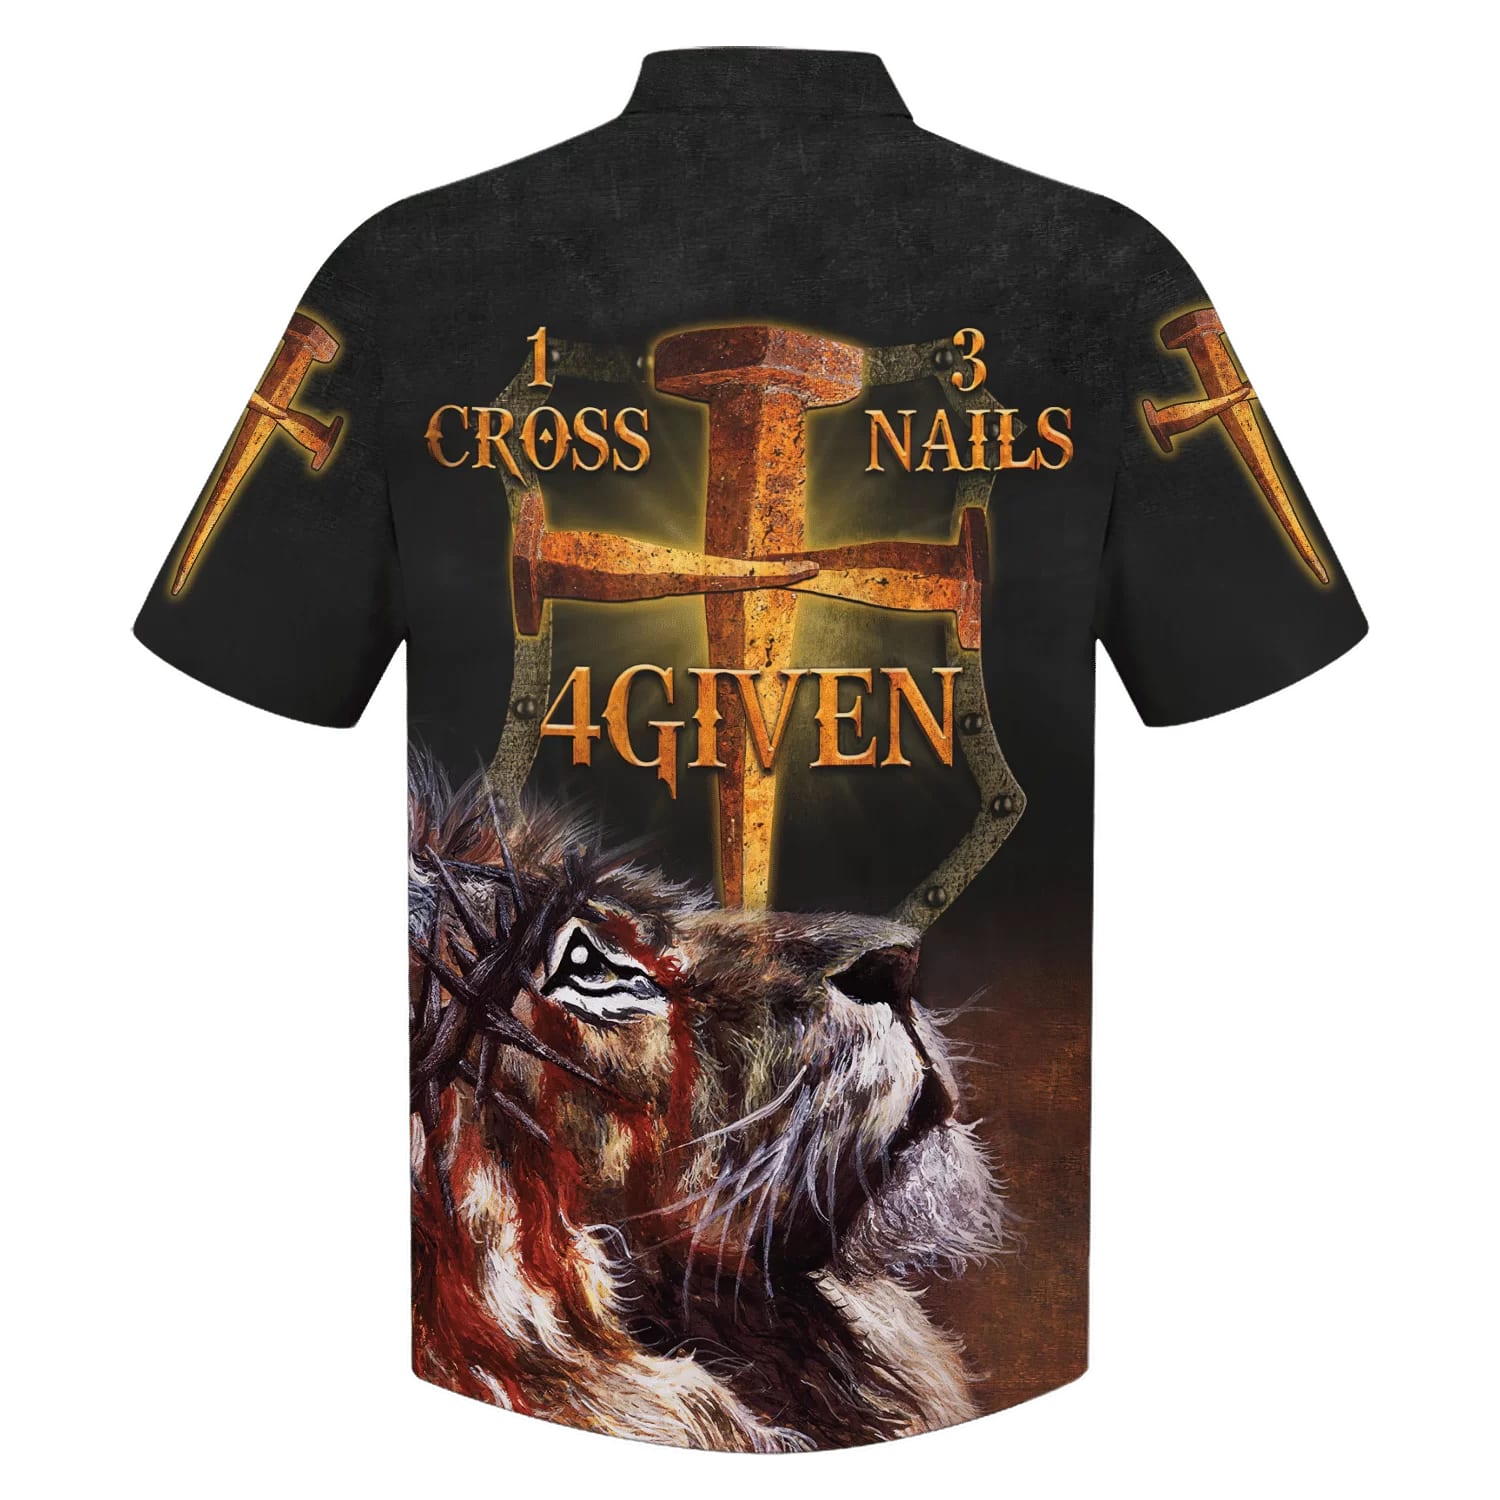 1 Cross 3 Nails 4given Lion Hawaiian Shirts - Christian Hawaiian Shirt - Hawaiian Shirts For Men